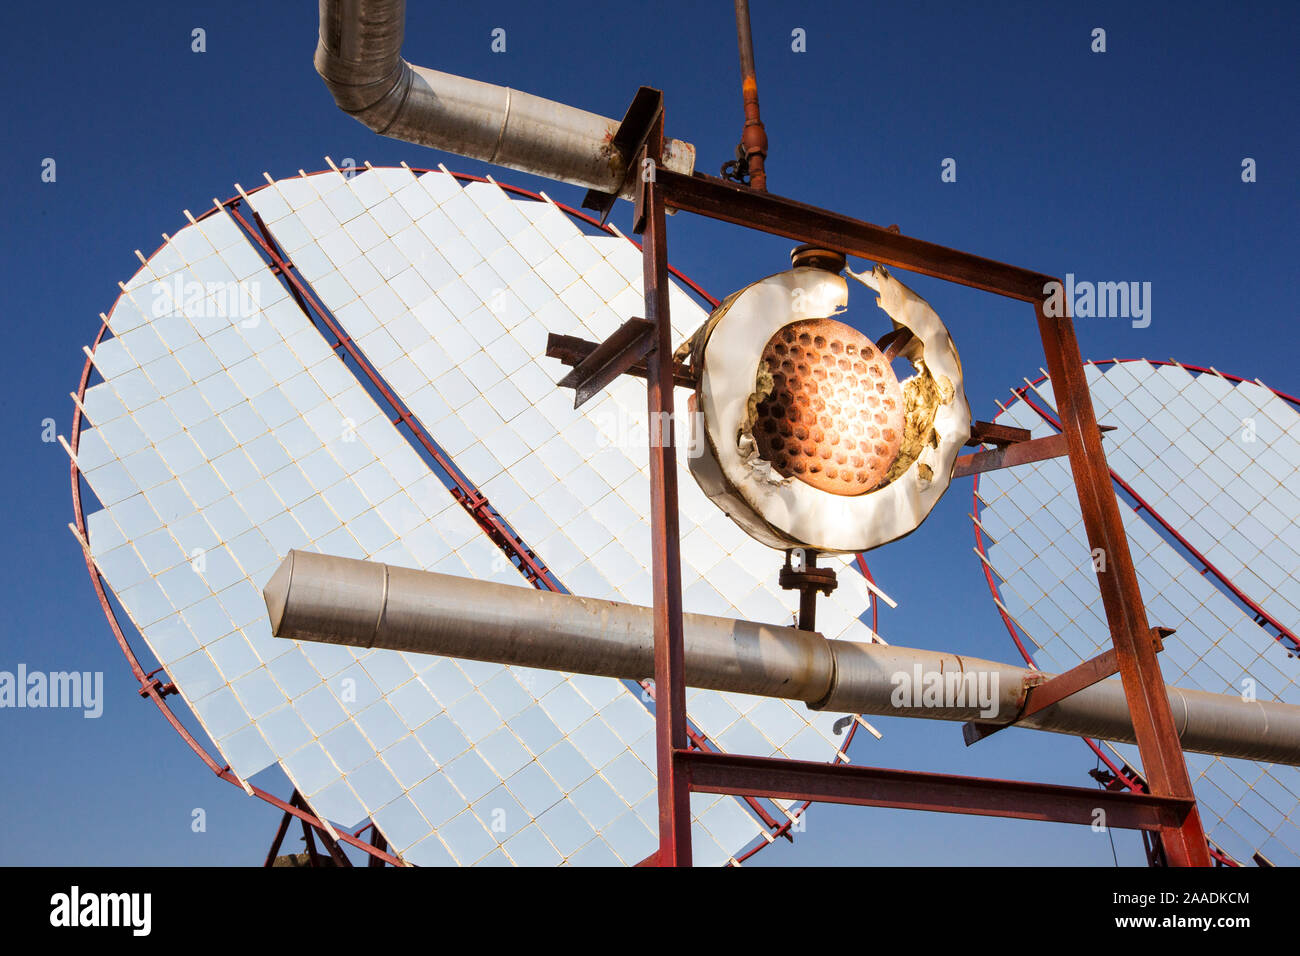 Los paneles solares que se enfocan los rayos del sol en los intercambiadores de calor para hervir el aceite, que luego es enviado a las cocinas de abajo para calentar las cocinas. Muni Seva Ashram, Goraj, cerca de Vadodara, India, diciembre de 2013. Foto de stock